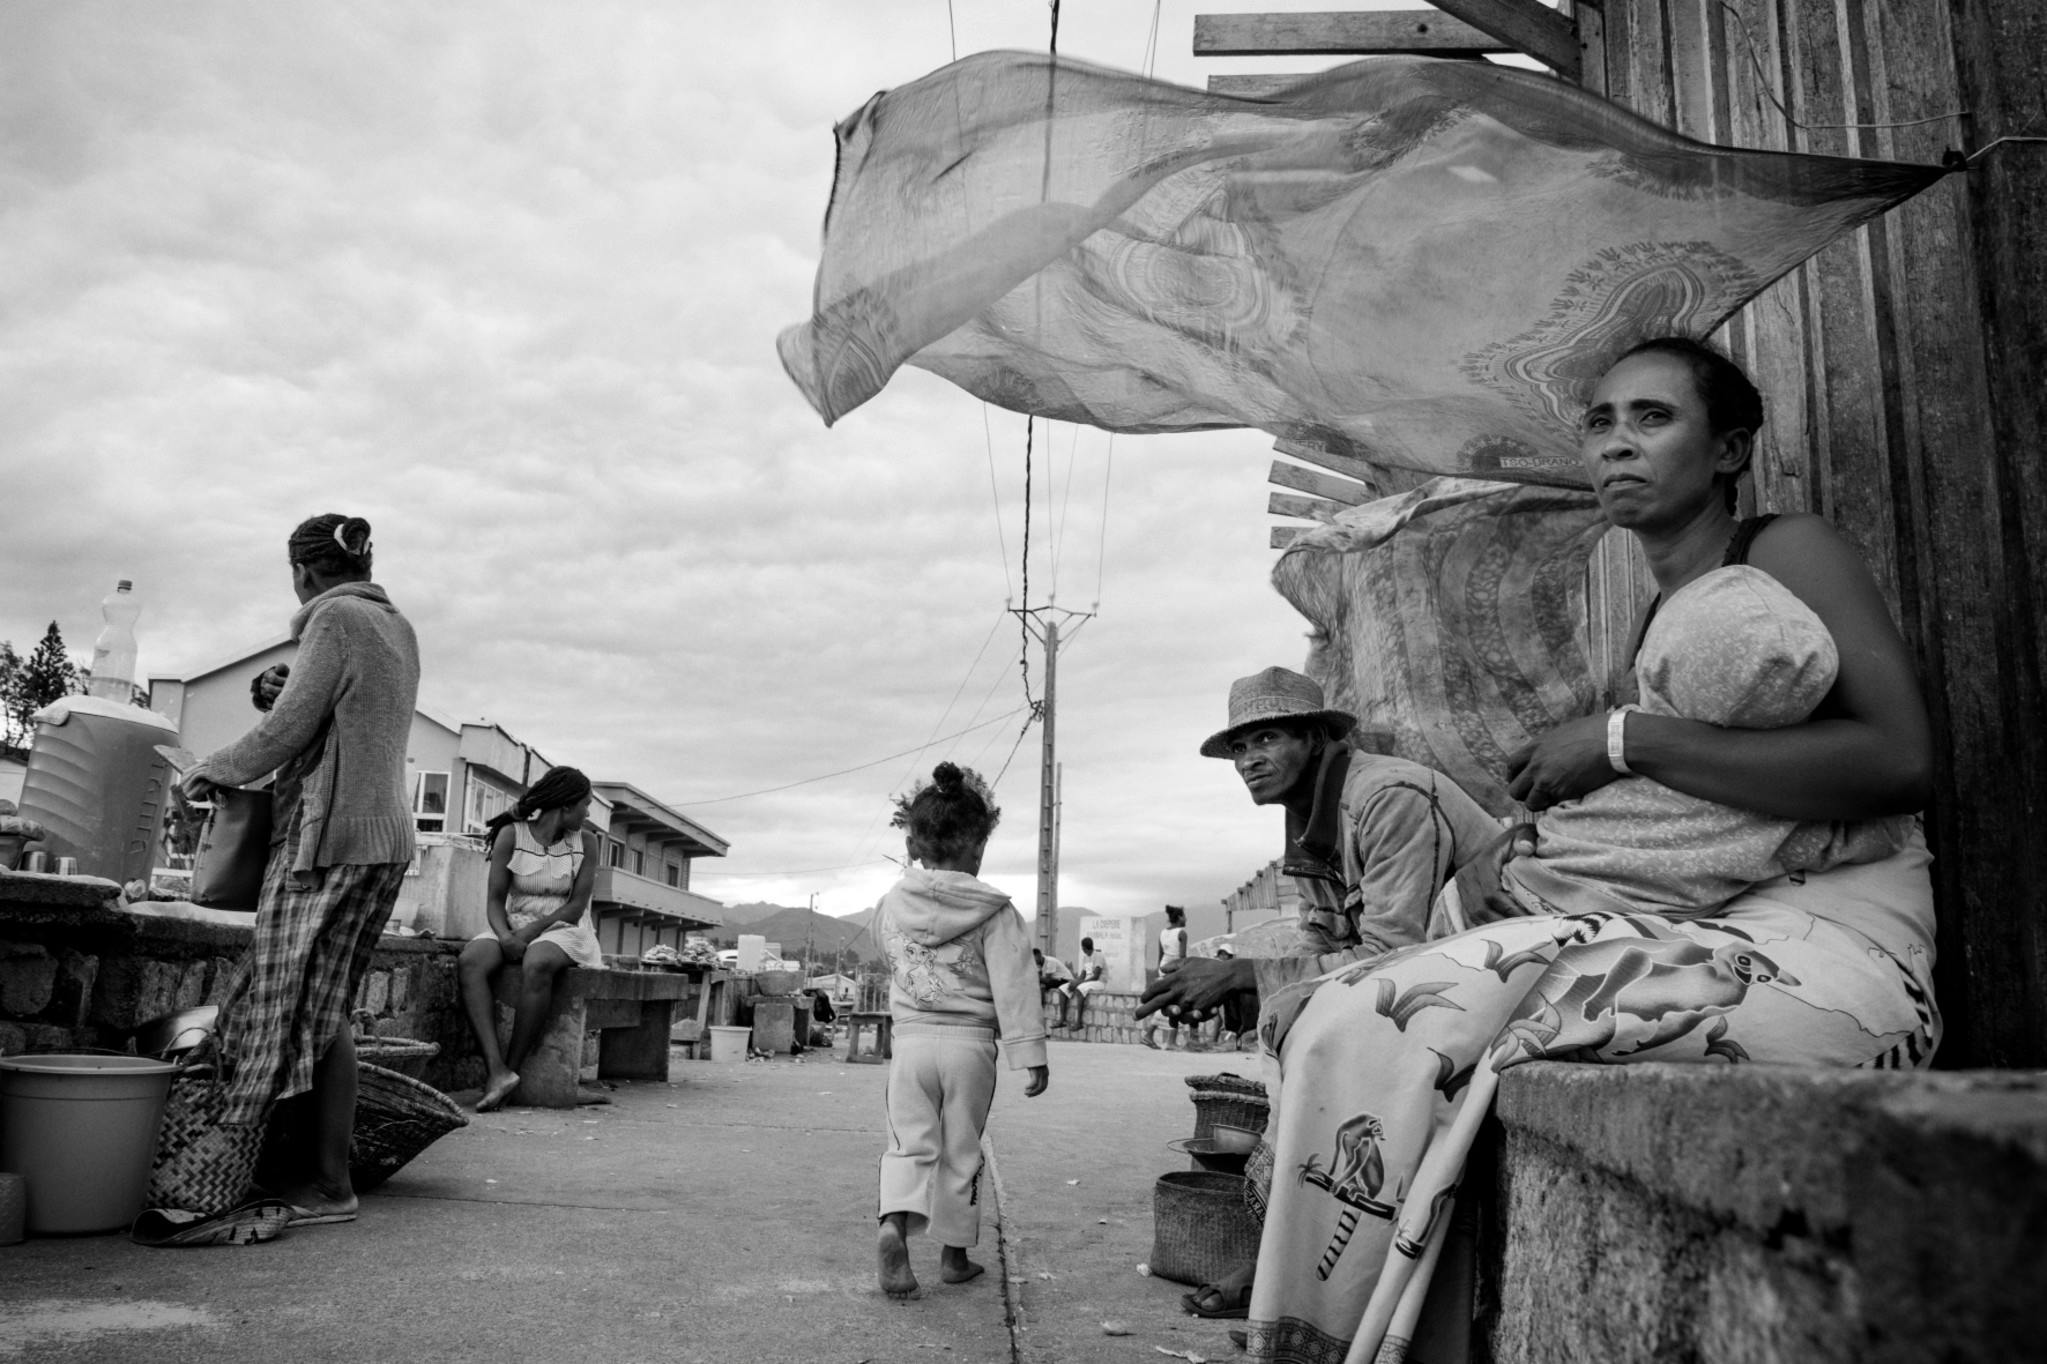 Amnesty International France - Madagascar
Le sud de Madagascar est en crise. La région sud du pays, communément appelée Le Grand Sud, connaît actuellement la pire sécheresse depuis 40 ans. Plus d'un million de personnes sont au bord de la famine